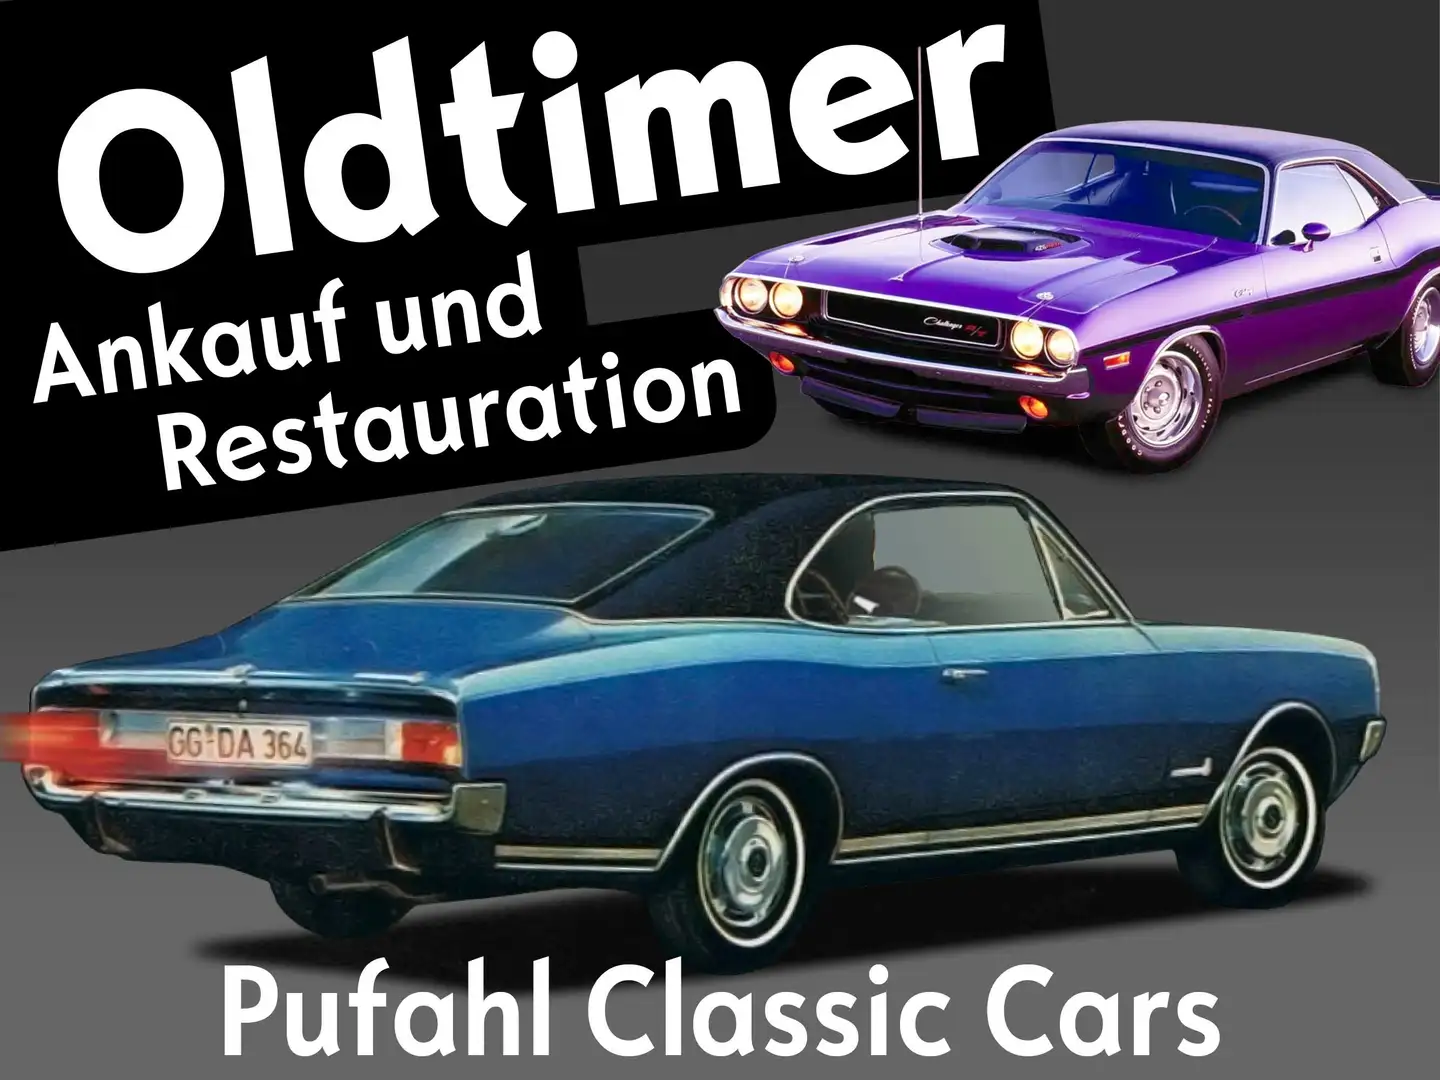 Pontiac Firebird Pufahl Classic Cars Ankauf und Restauration Schwarz - 1